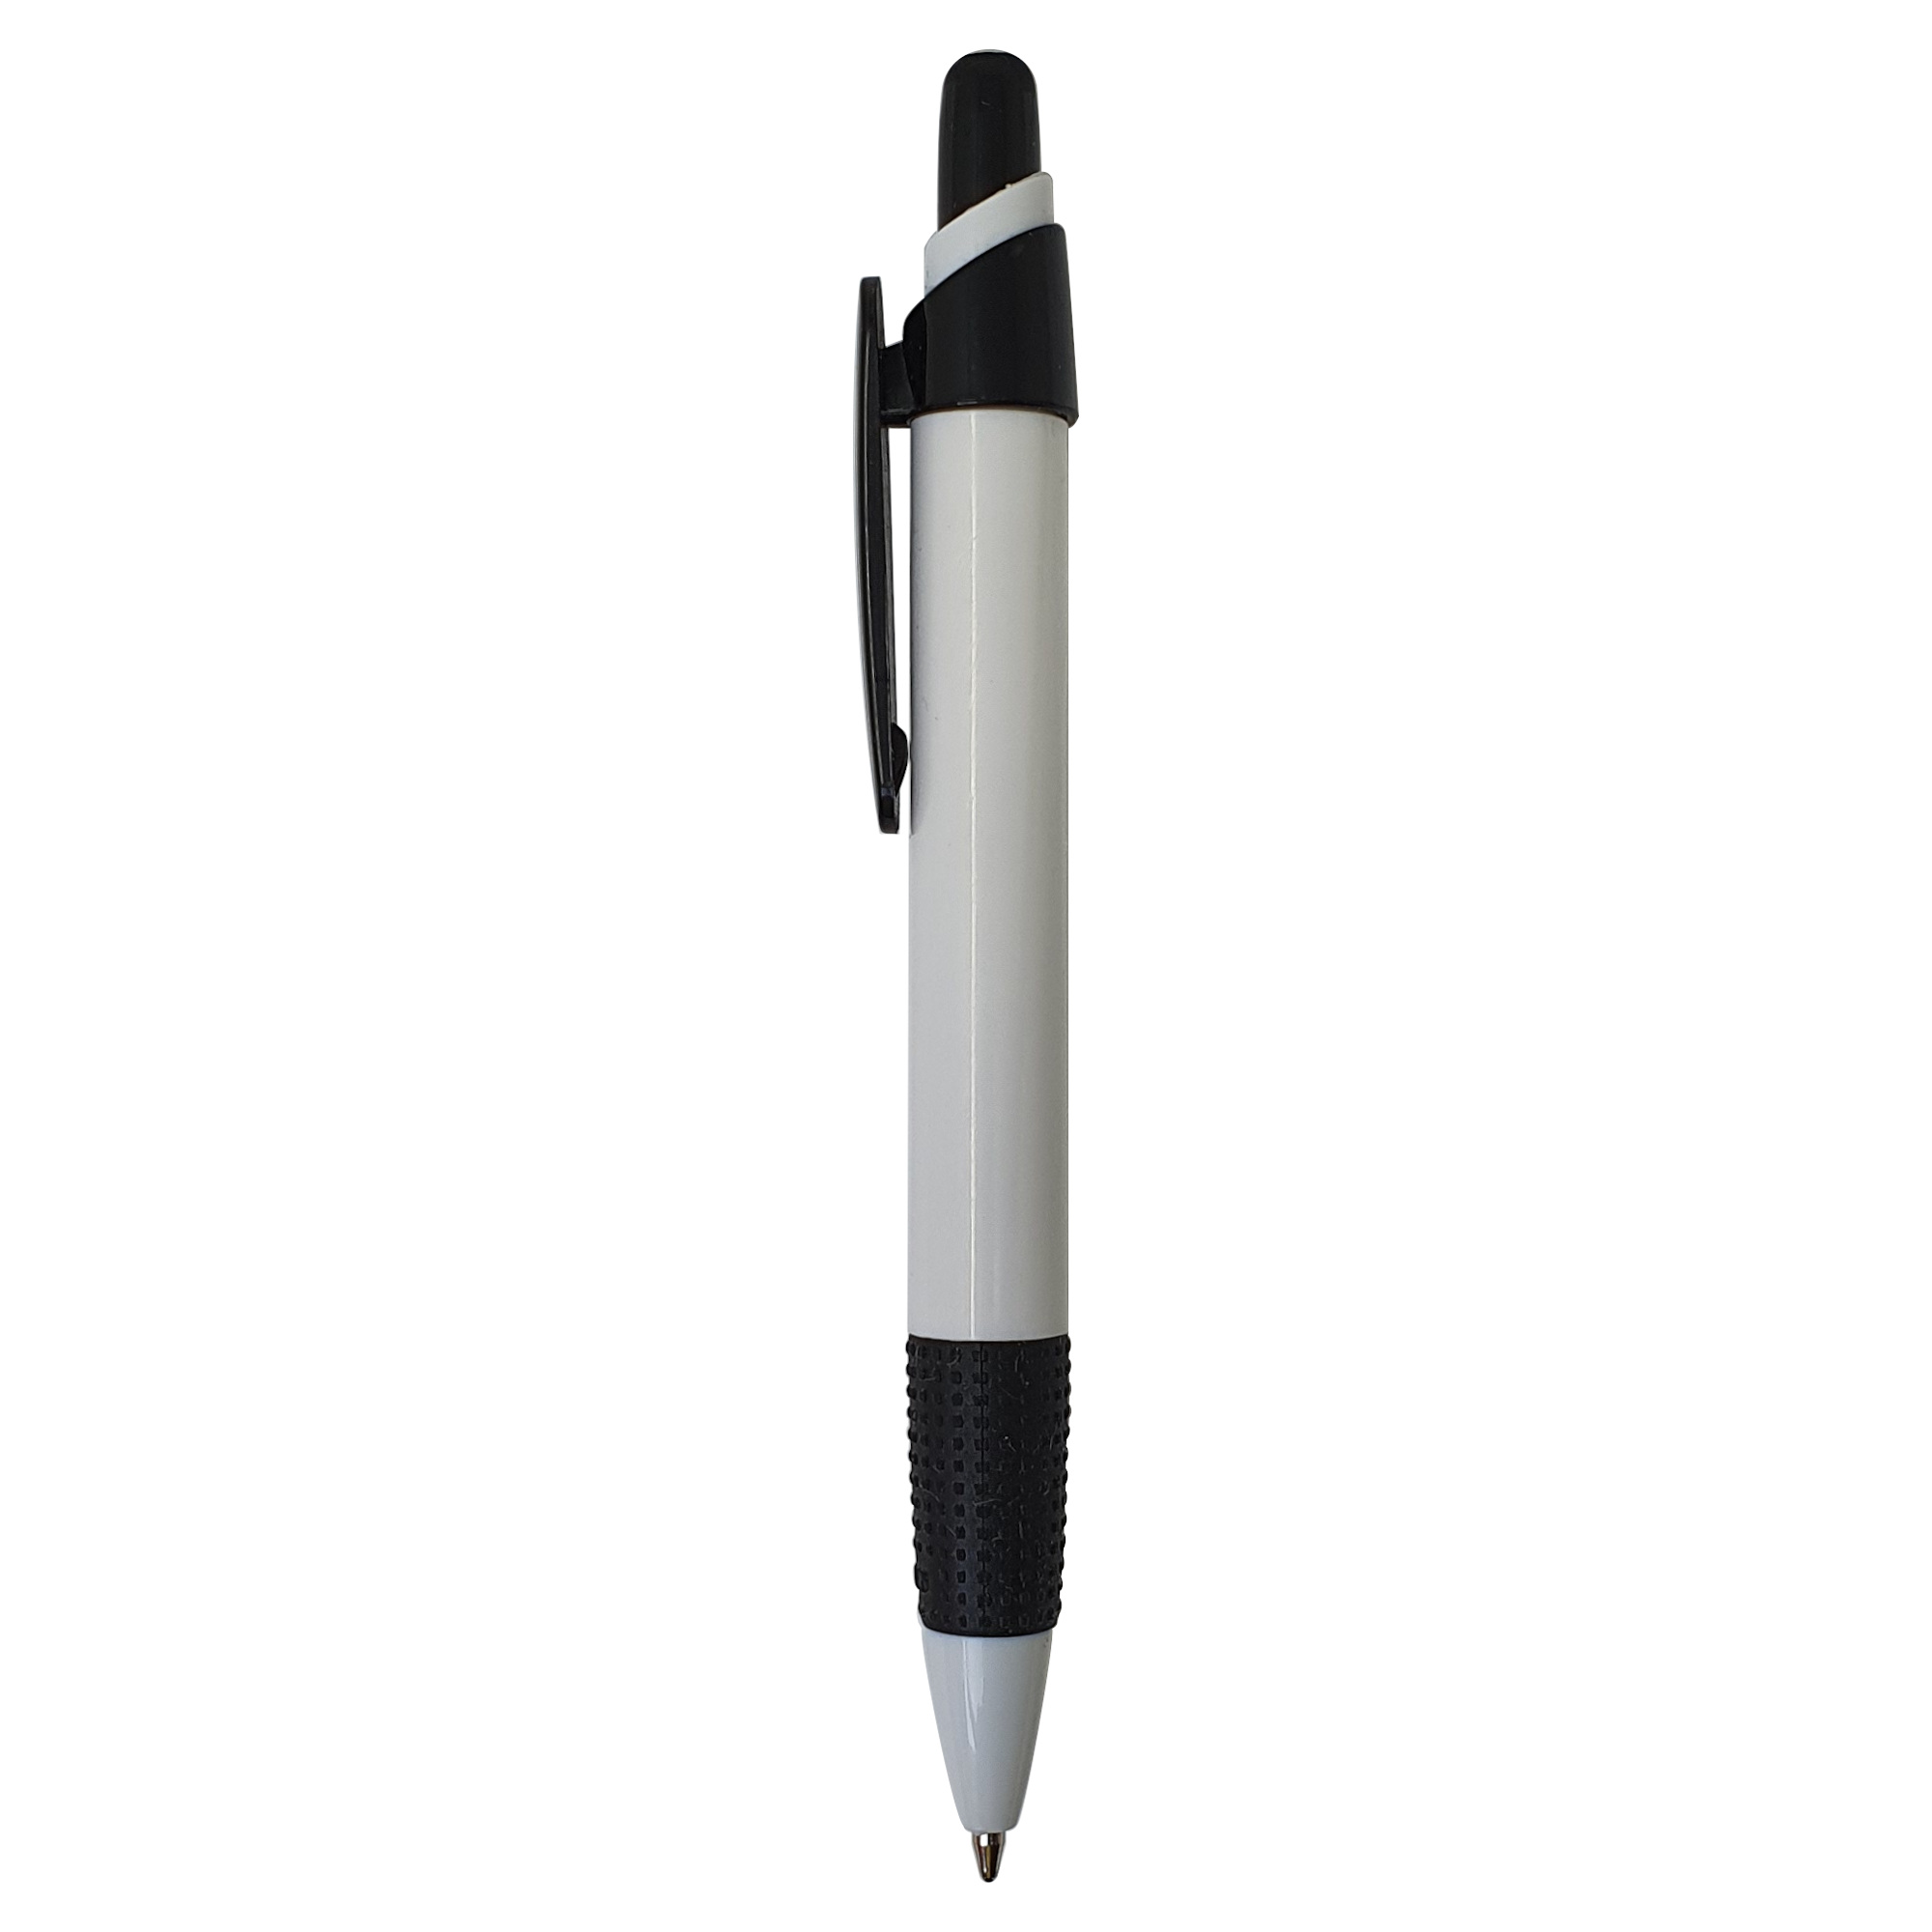 Bolígrafo Ipanema
Color negro y blanco